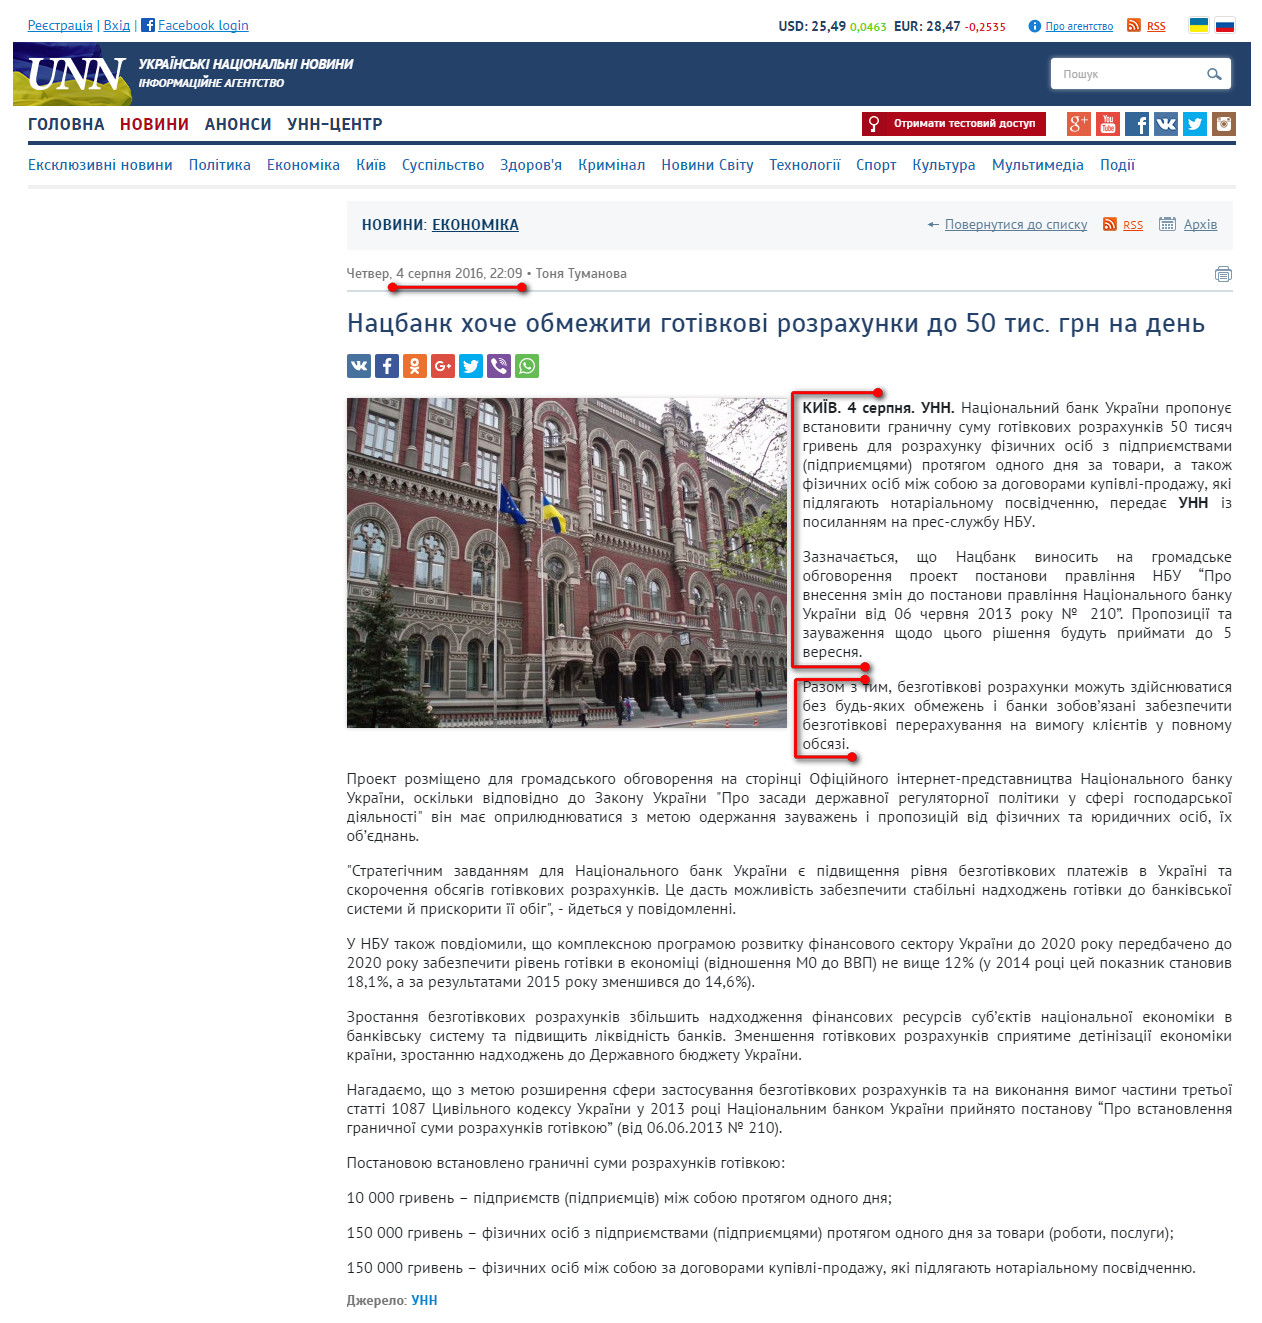 http://www.unn.com.ua/uk/news/1591989-natsbank-khoche-obmezhiti-gotivkovi-rozrakhunki-do-50-tis-grn-na-den